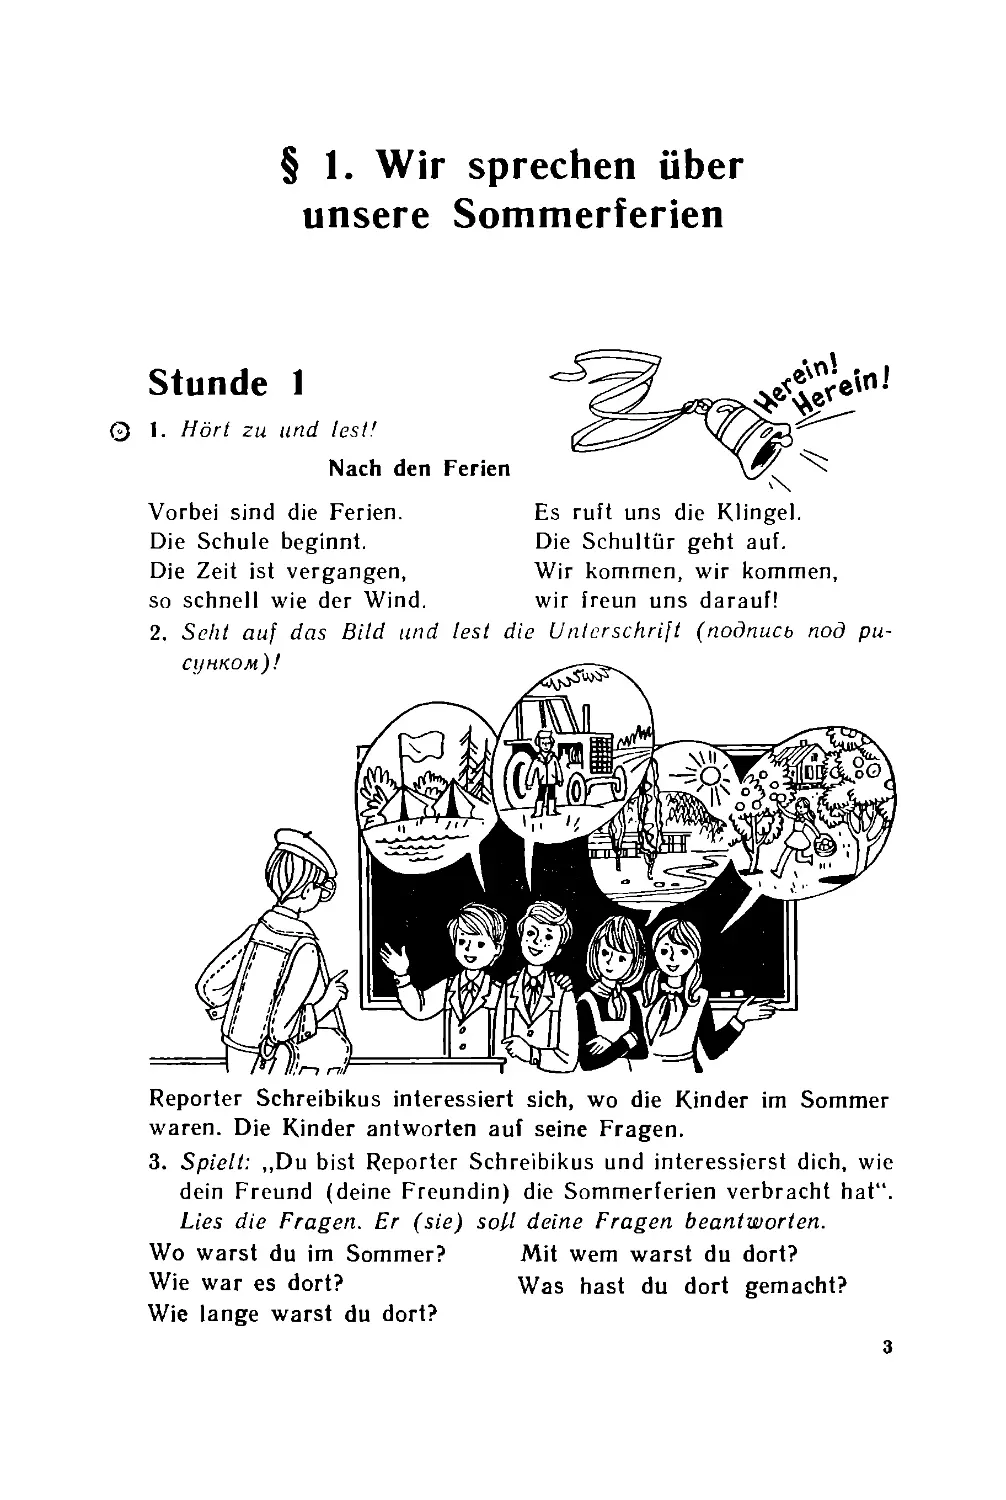 Учебник немецкого языка с репортером Шрайбикус